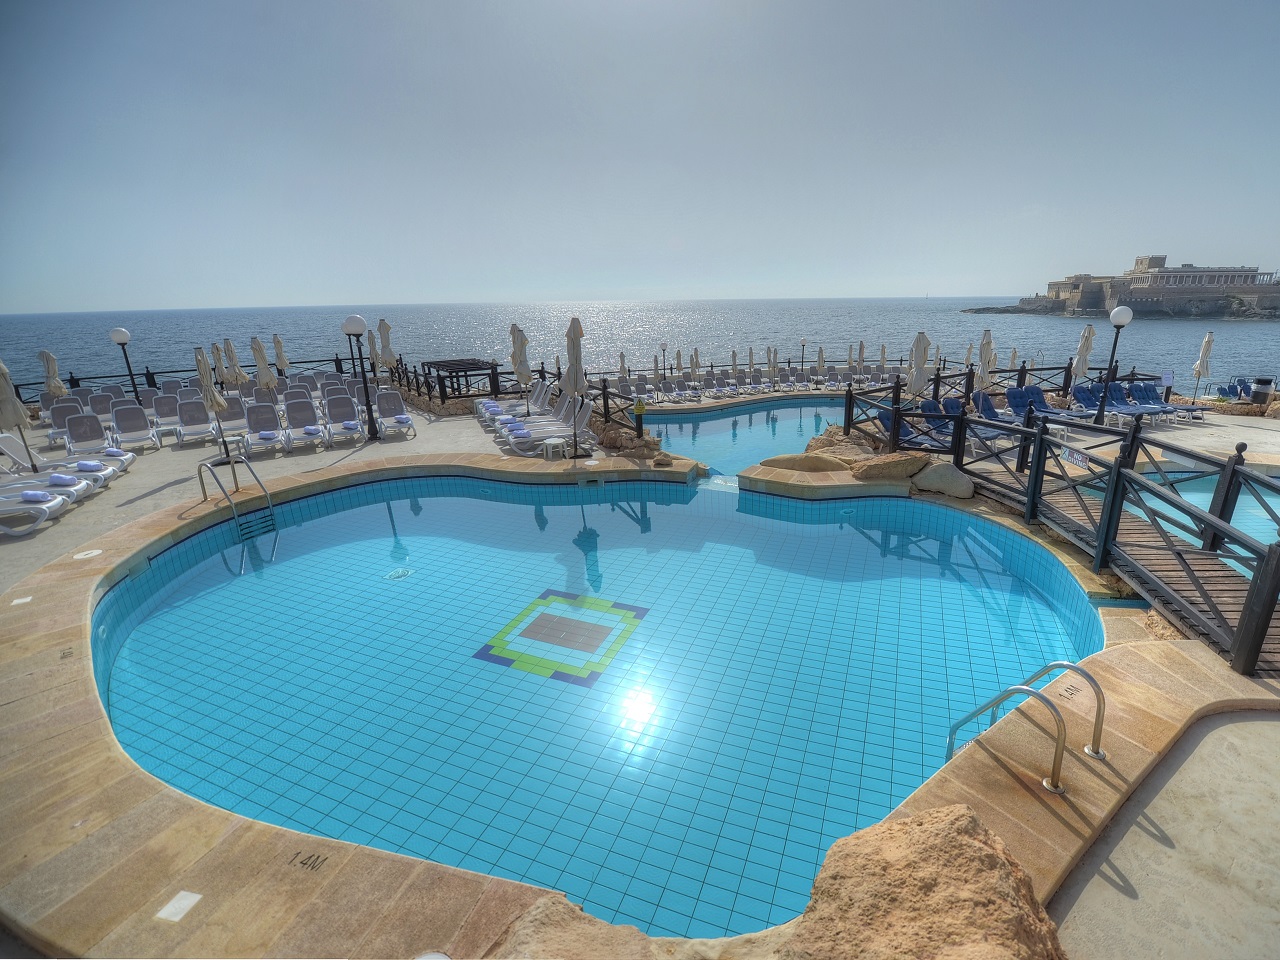 Radisson Blu Resort, Malta St. Julian’s (21)